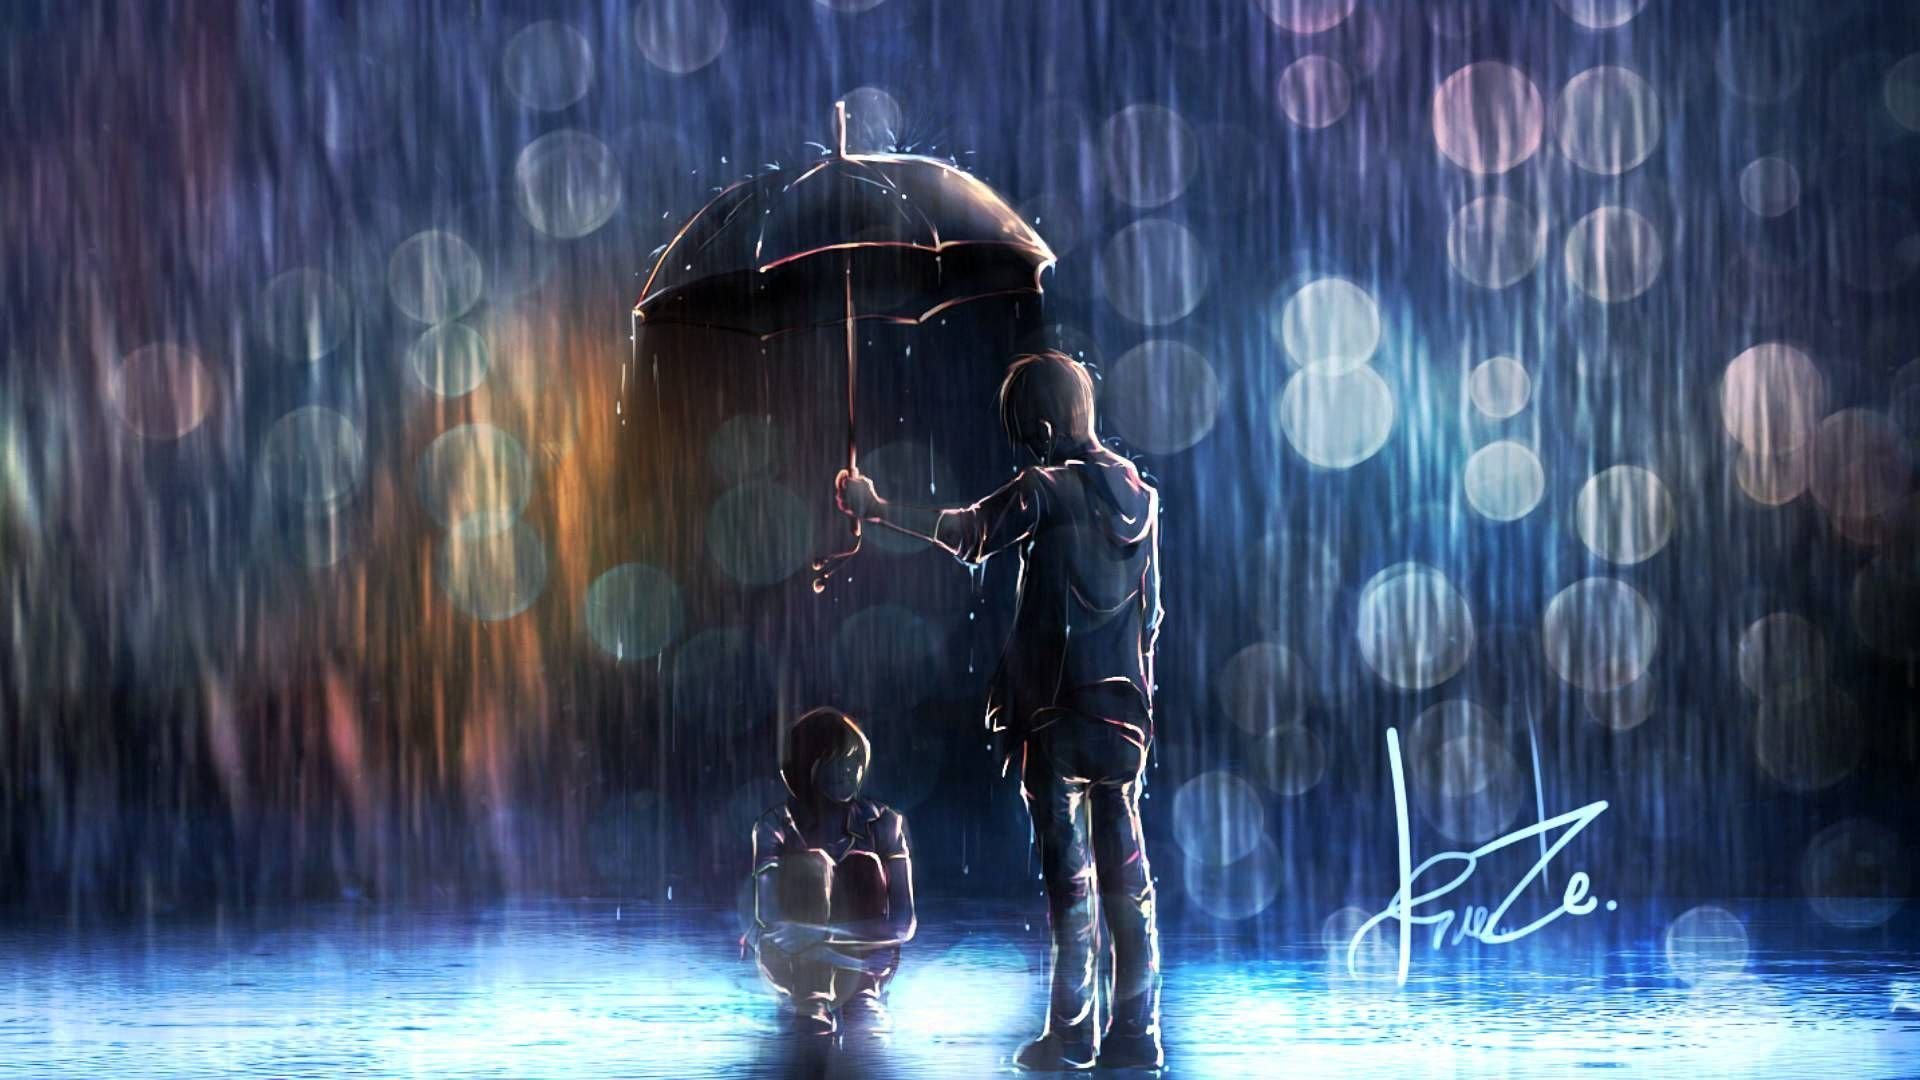 Одинокий романтик. Под дождем. Человек под дождем арт. Человек под дождем.